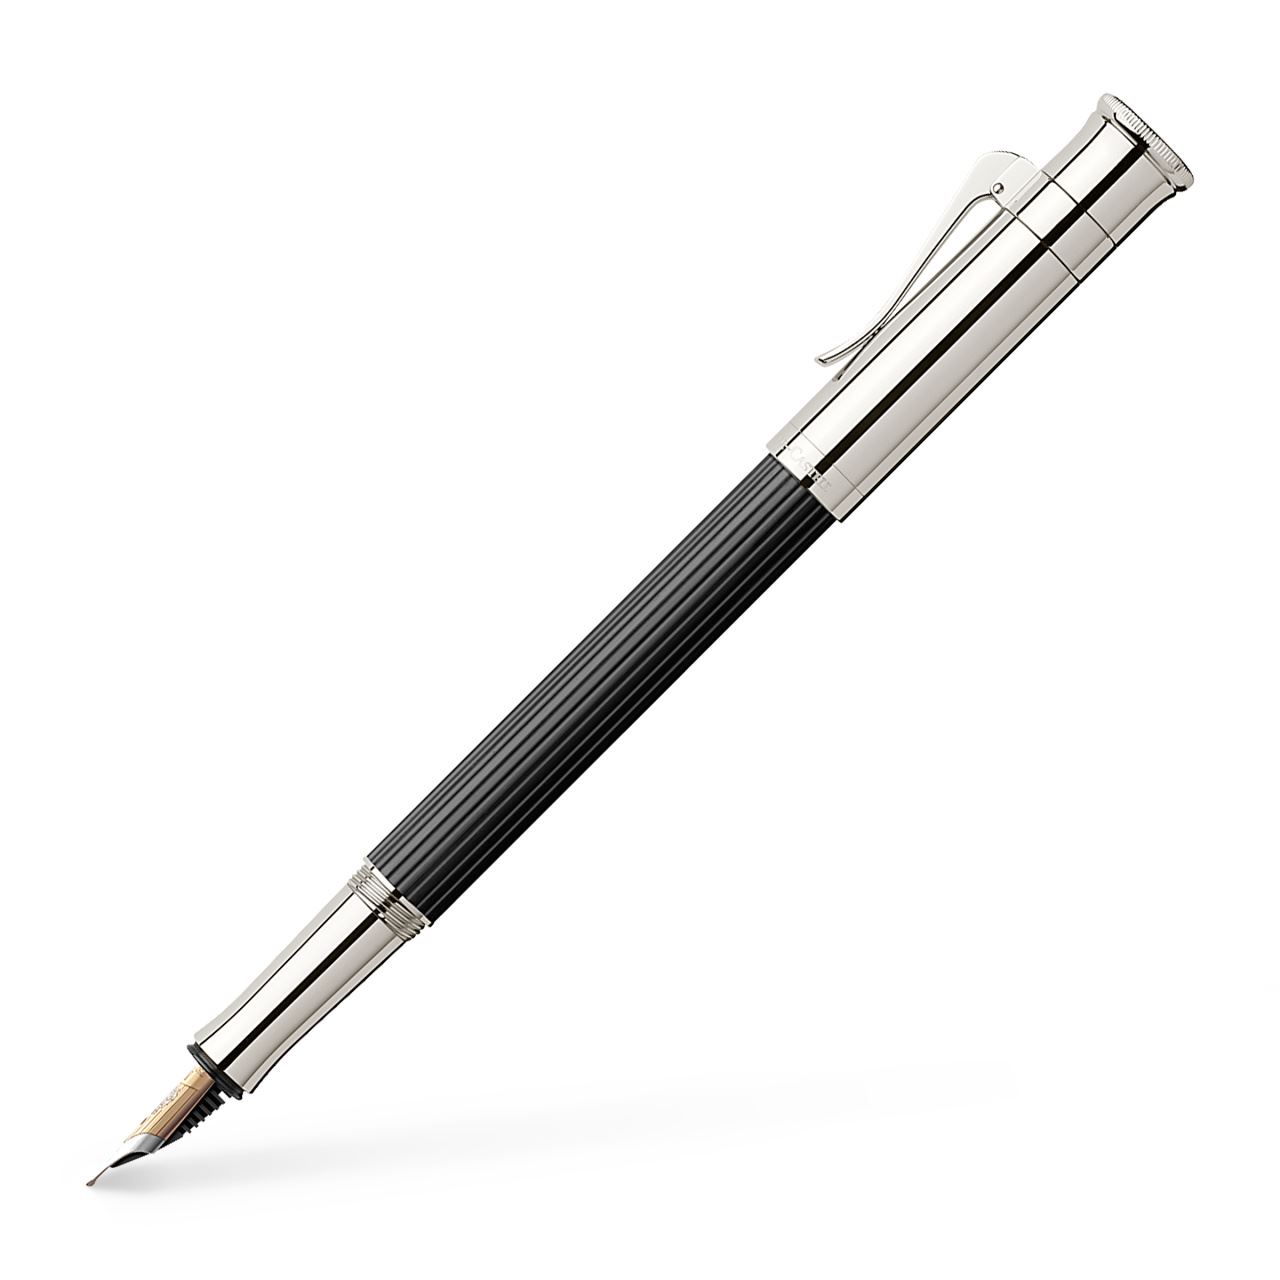 Stylus Pen Black walnut wood  Pen Handcrafted Pens EURO Classic Wooden Pen